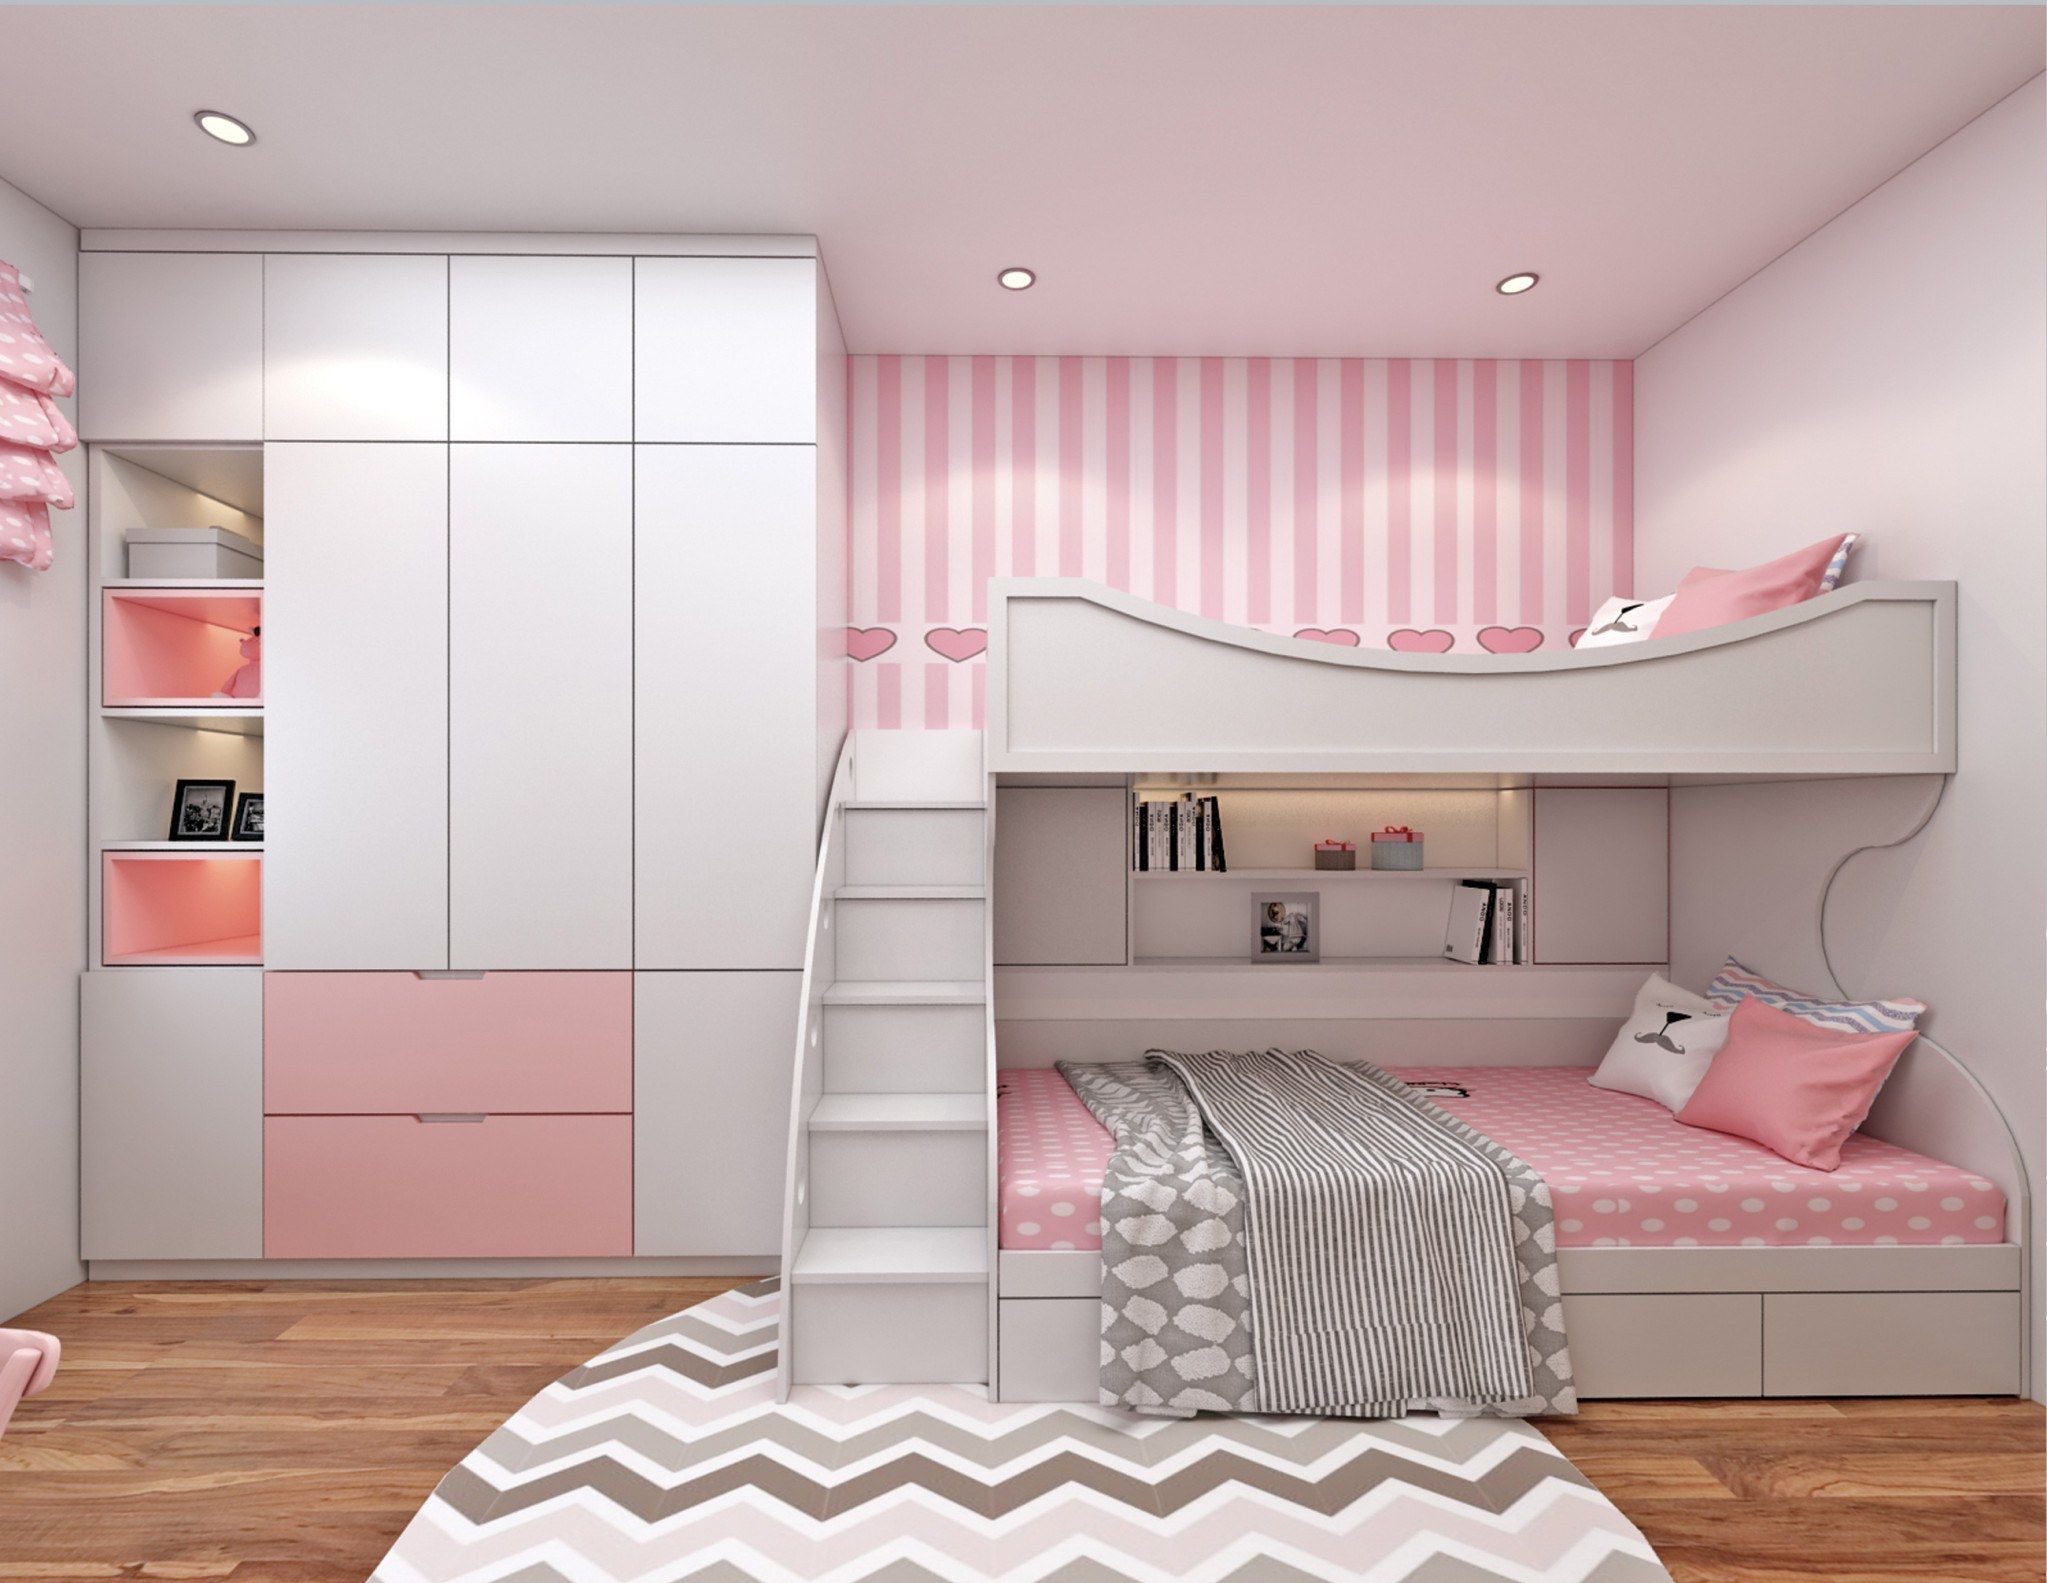 Căn phòng dành cho bé yêu màu hồng trắng kết hợp nội thất đa năng đầy tiện nghi, hiện đại